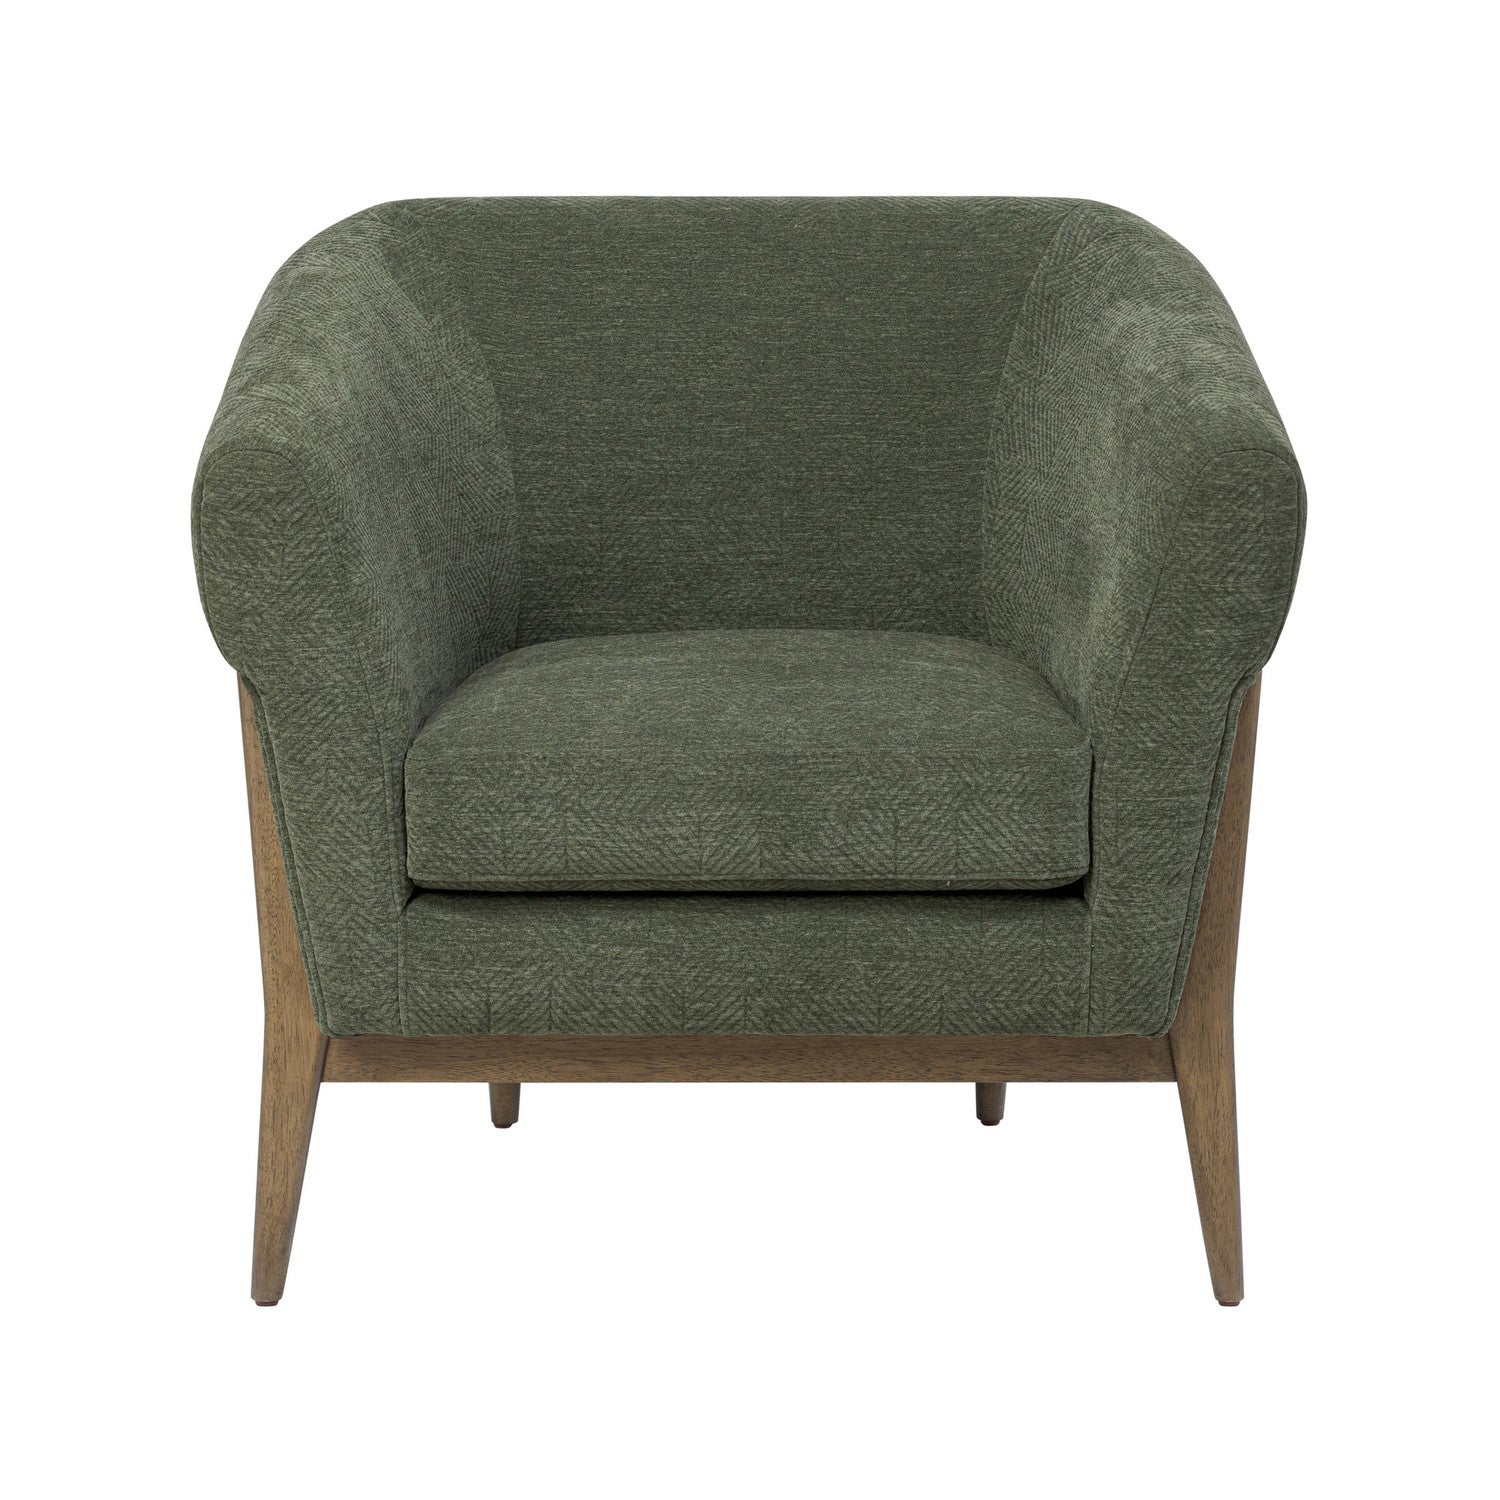 Varaluz - 515CH32B - Accent Chair - Melrose - Harvest Oak/Green